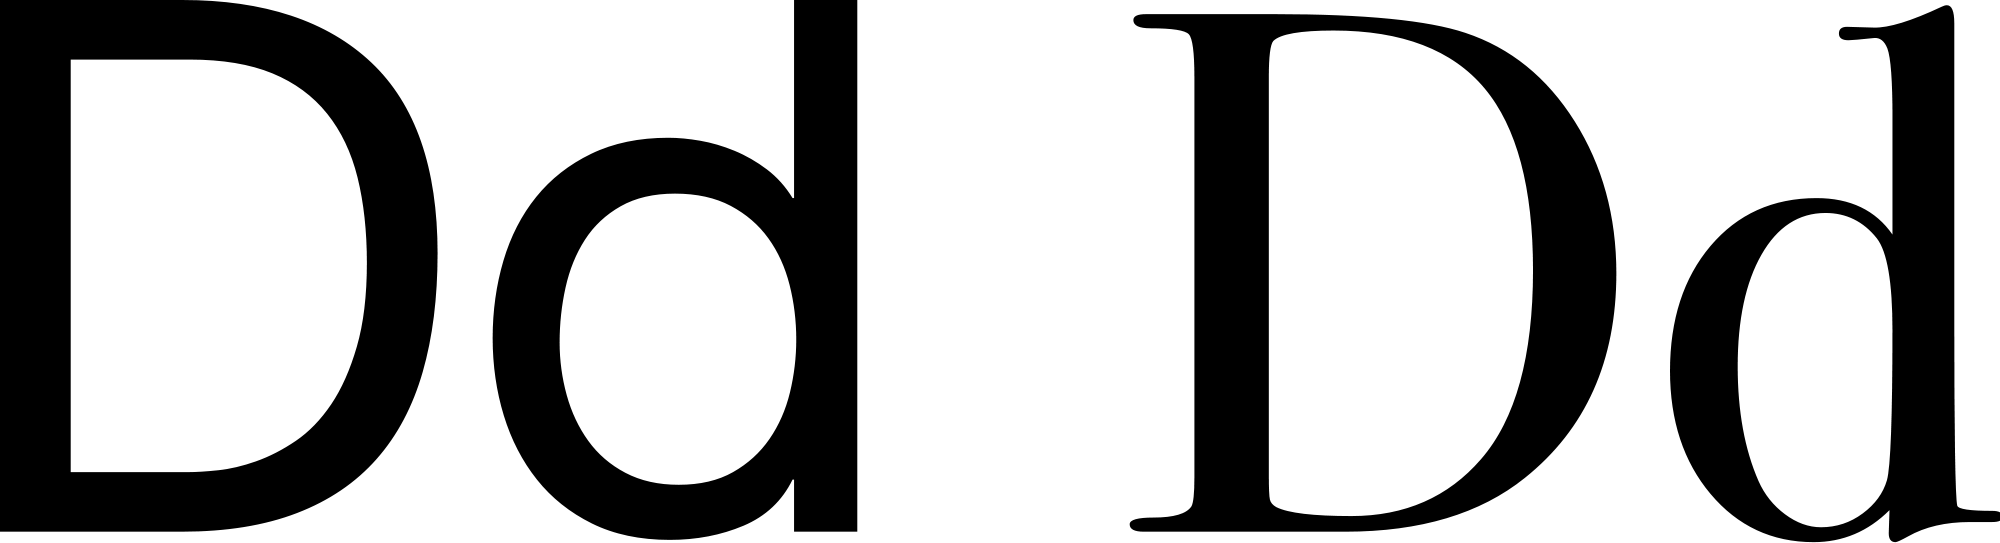 Open - Ladin Alphabet (2000x543)